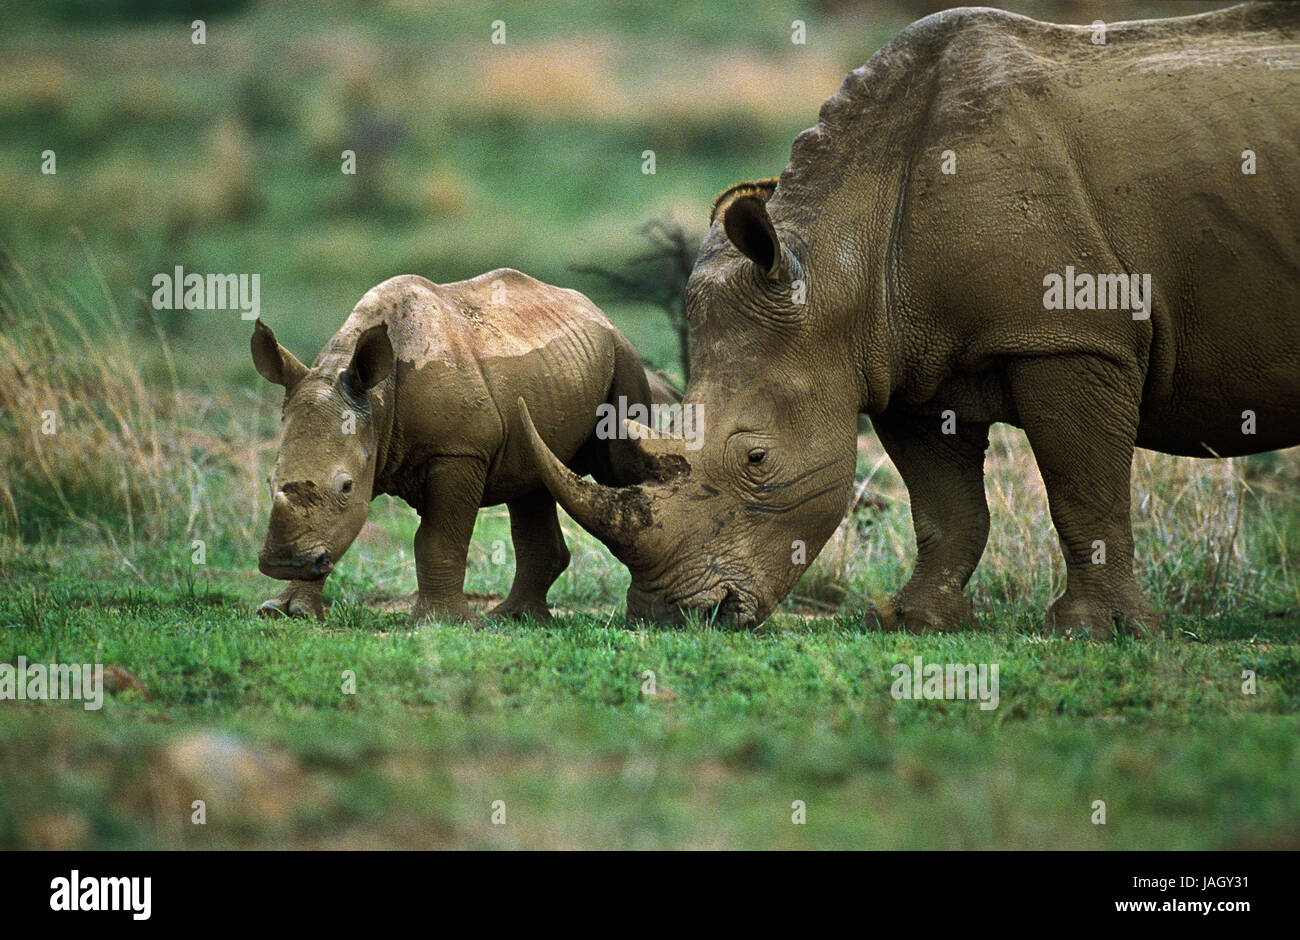 A bocca larga rinoceronte,Ceratotherium simum,madre animale,vitello,Sud Africa, Foto Stock